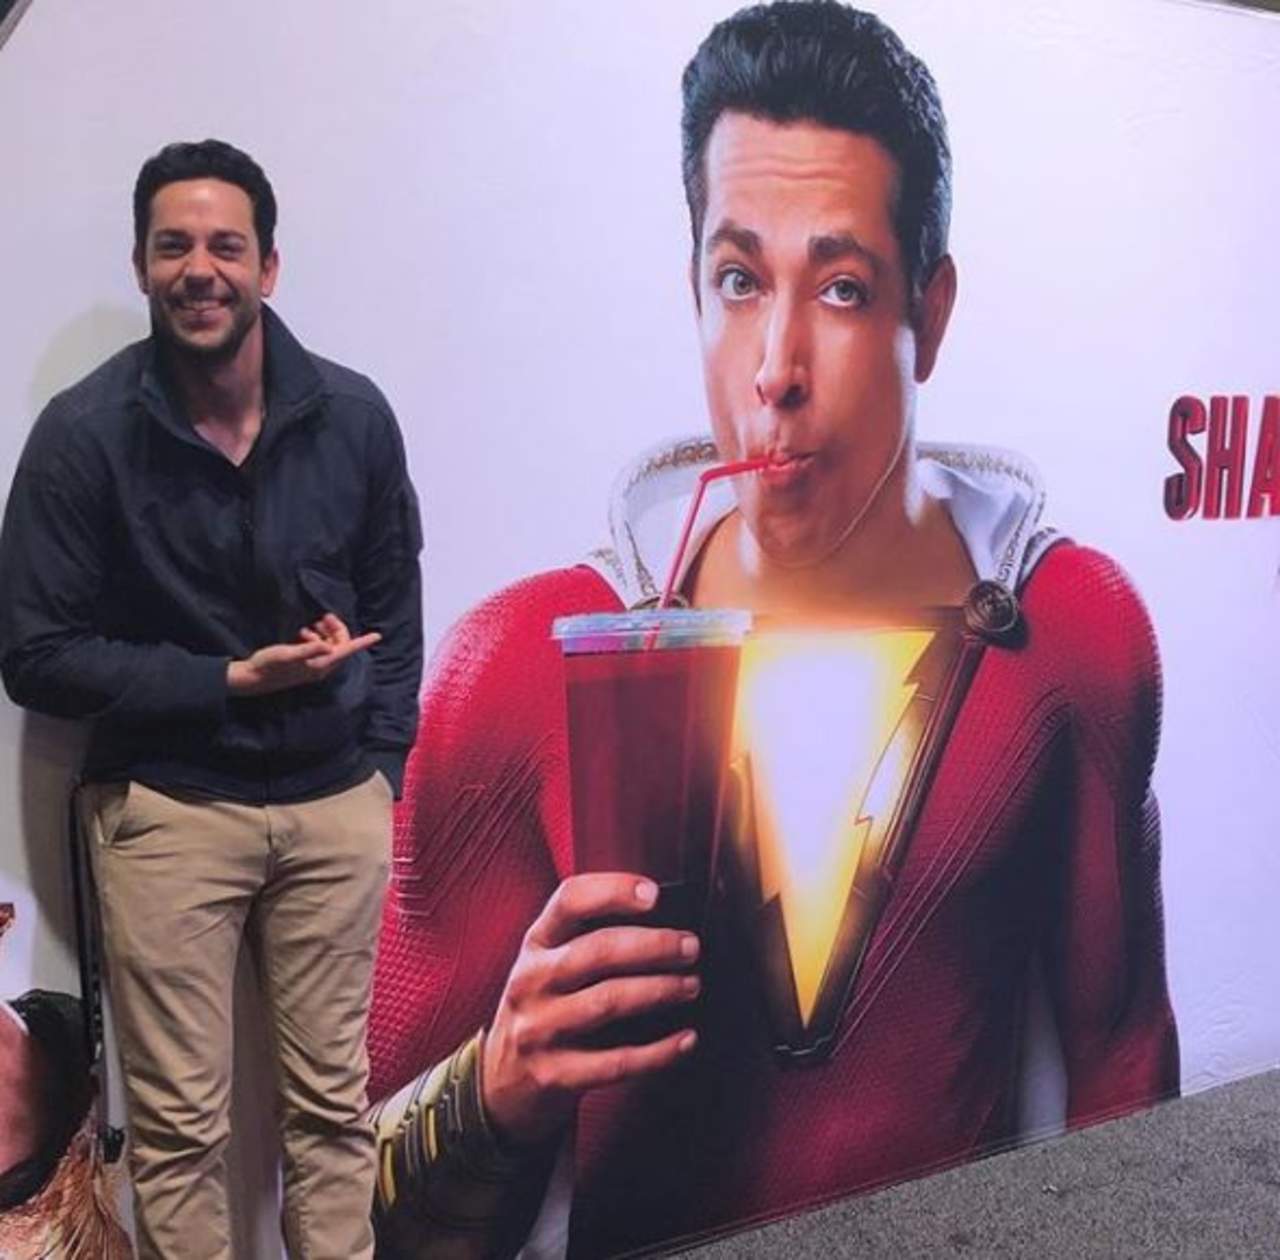 Los seguidores de “Shazam” por fin vieron cómo lucirá el superhéroe en la pantalla grande. (ESPECIAL)
